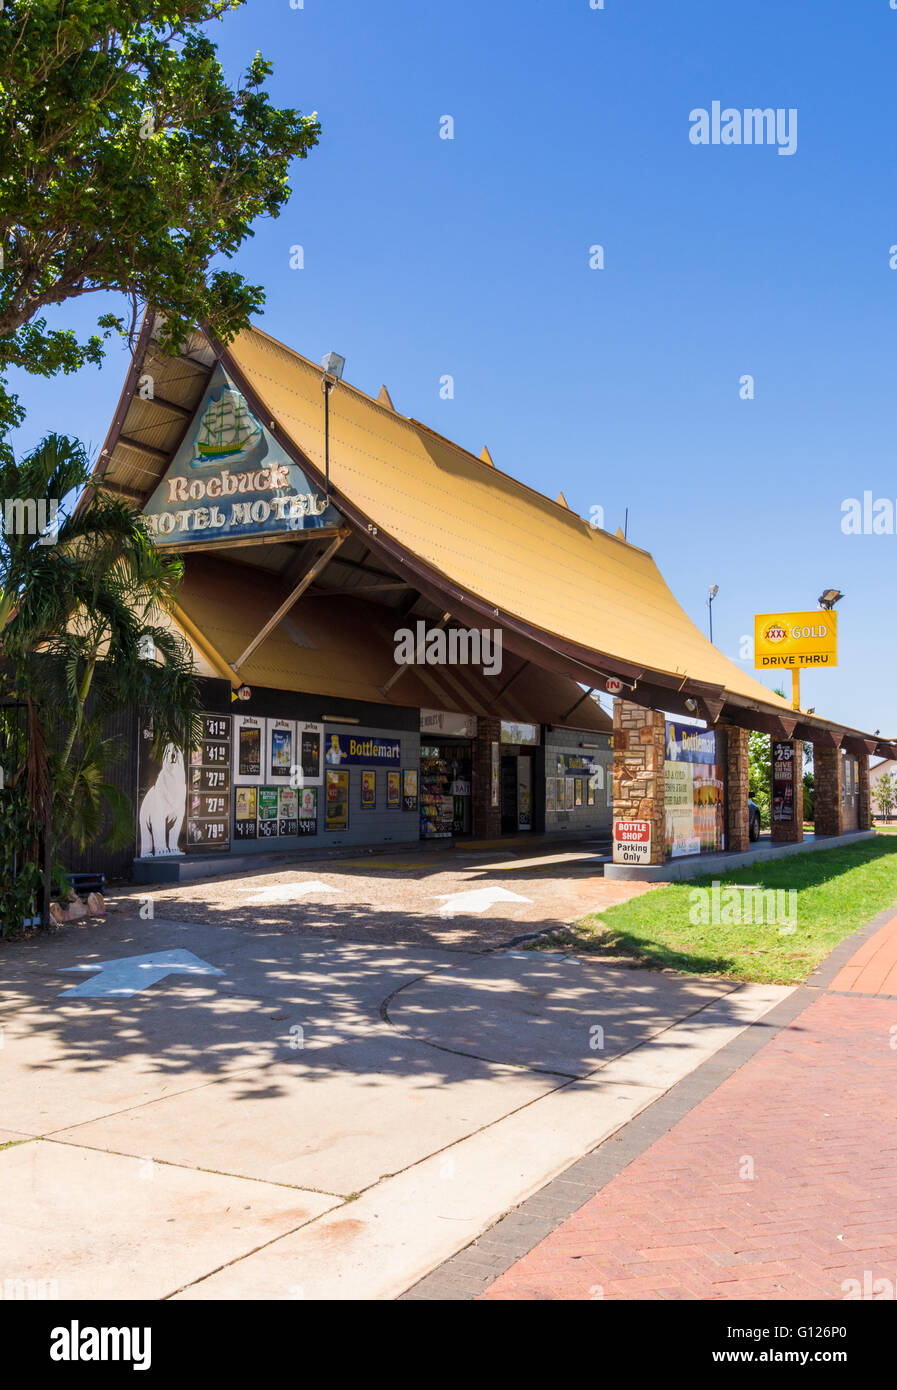 Die unverwechselbaren Drive-in Flasche Shop der Roebuck Bay Hotel Motel, Broome, Kimberley, Western Australia Stockfoto